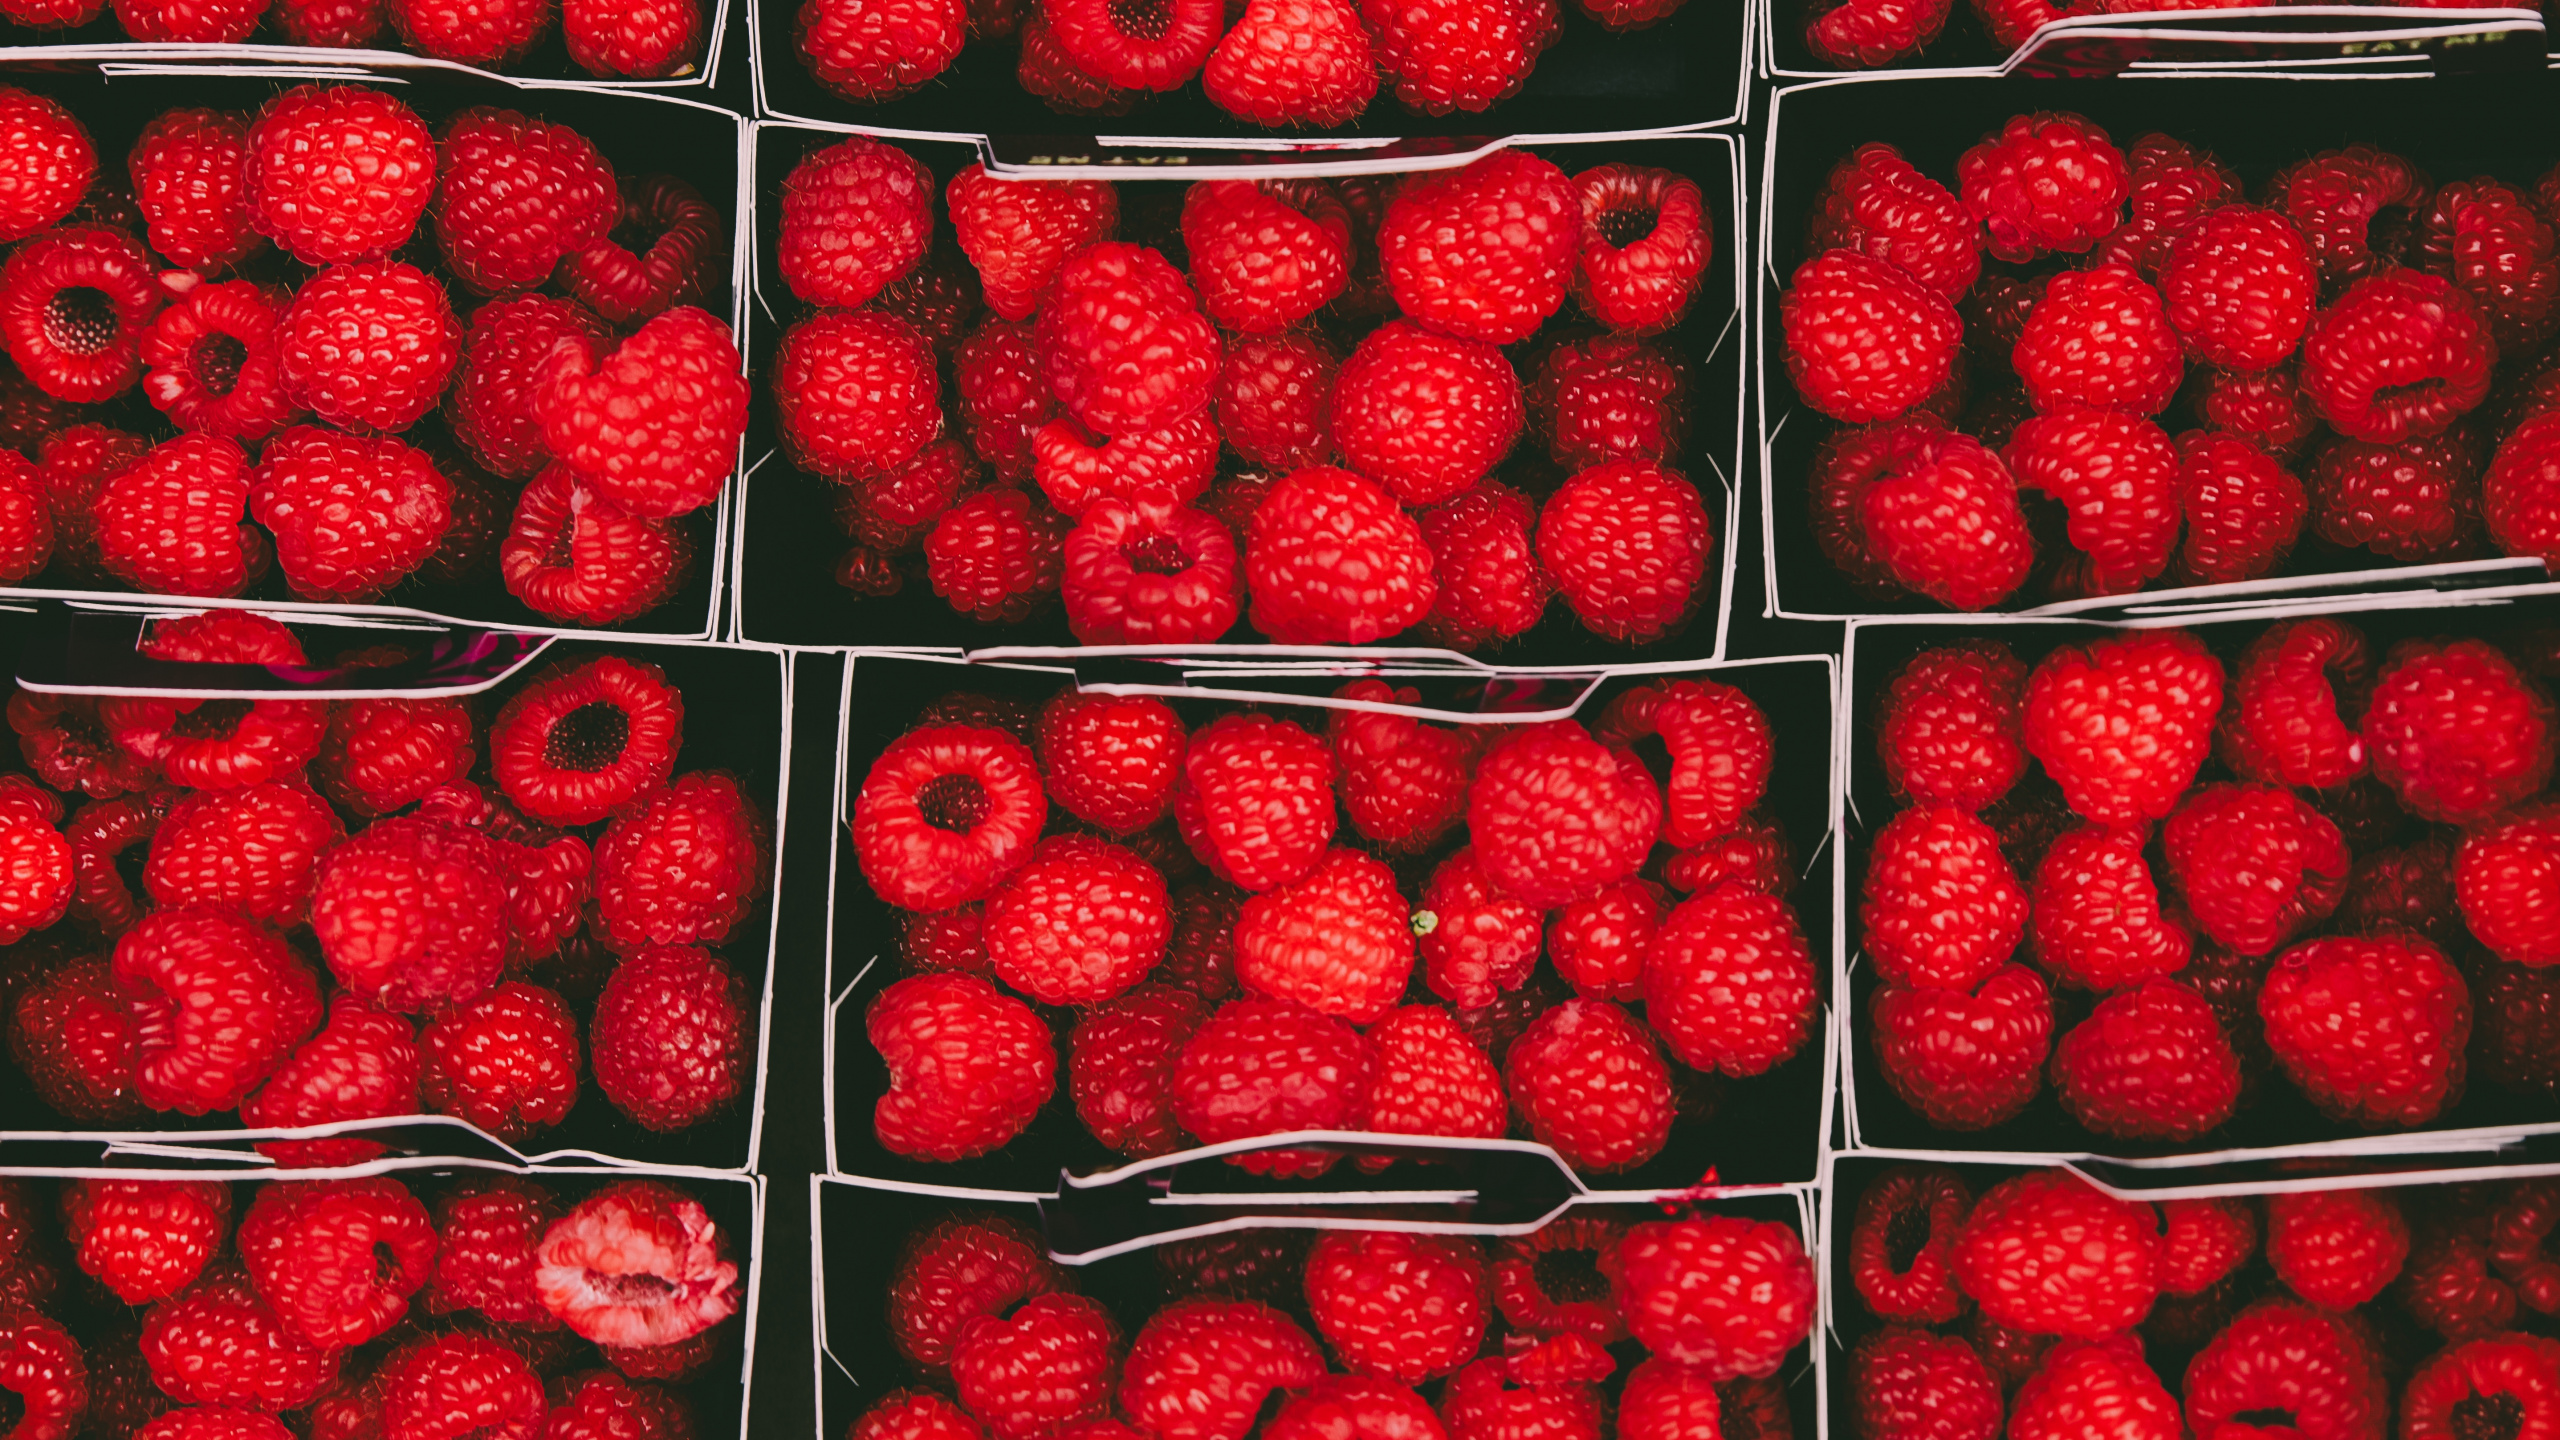 天然的食物, 当地的食物, 红色的, 无核果, 树莓 壁纸 2560x1440 允许